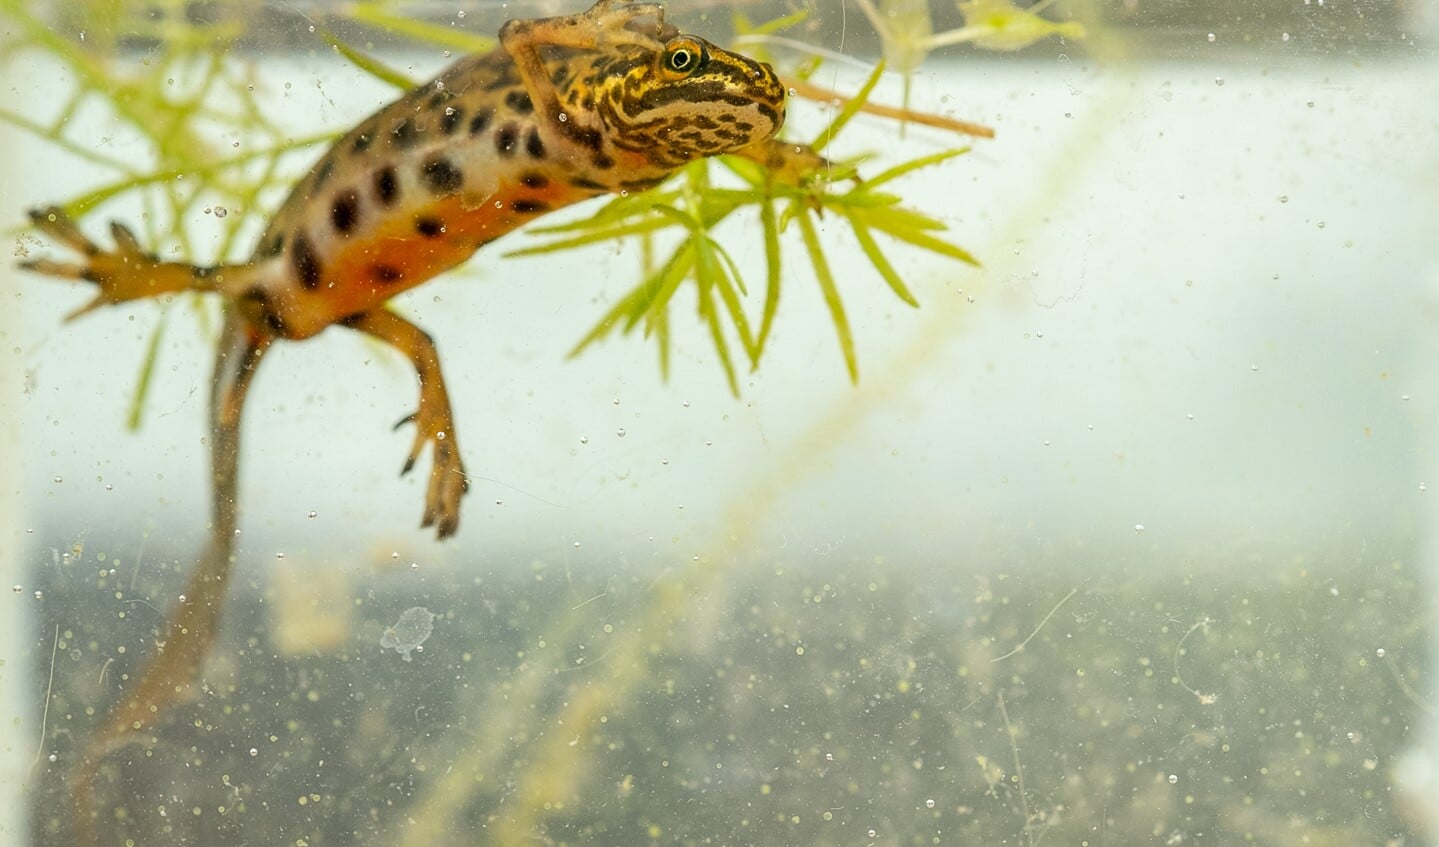 De watersalamander is een veelgeziene gast in de Zumpe. Foto: Burry van den Brink